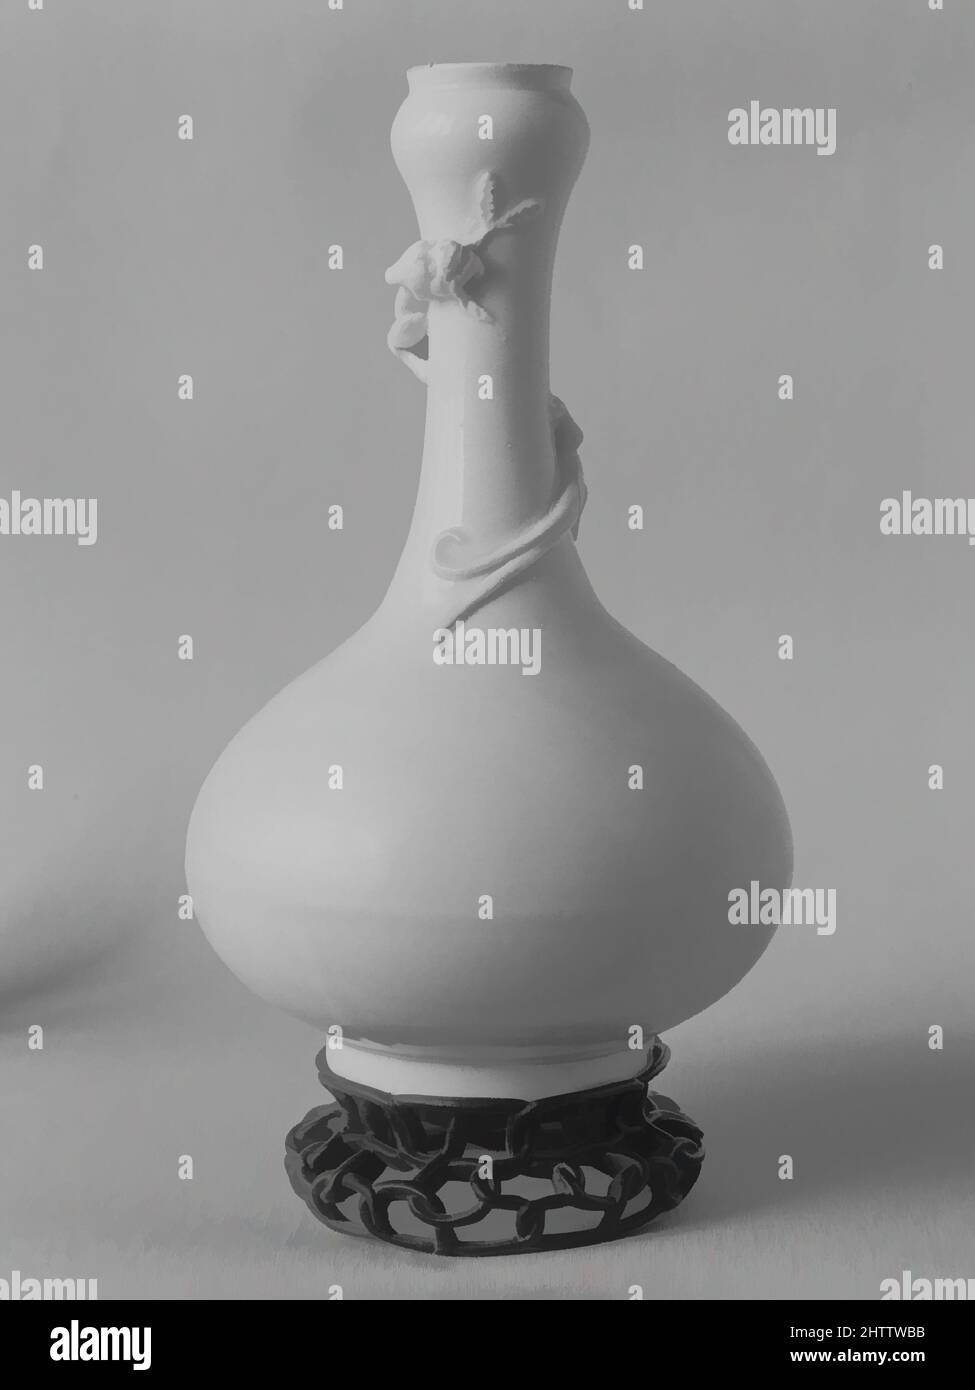 Arte ispirata da bottiglia con drago avvolgente, dinastia Ming (1368–1644), periodo Wanli (1573–1620), fine 16th secolo, Cina, Porcellana con smalto trasparente (Dehua ware), H. 8 1/4 poll. (21 cm), Ceramica, testimonianze archeologiche indica che i forni vicino a Dehua nella provincia di Fujian su, opere classiche modernizzate da Artotop con un tuffo di modernità. Forme, colore e valore, impatto visivo accattivante sulle emozioni artistiche attraverso la libertà delle opere d'arte in modo contemporaneo. Un messaggio senza tempo che persegue una nuova direzione selvaggiamente creativa. Artisti che si rivolgono al supporto digitale e creano l'NFT Artotop Foto Stock